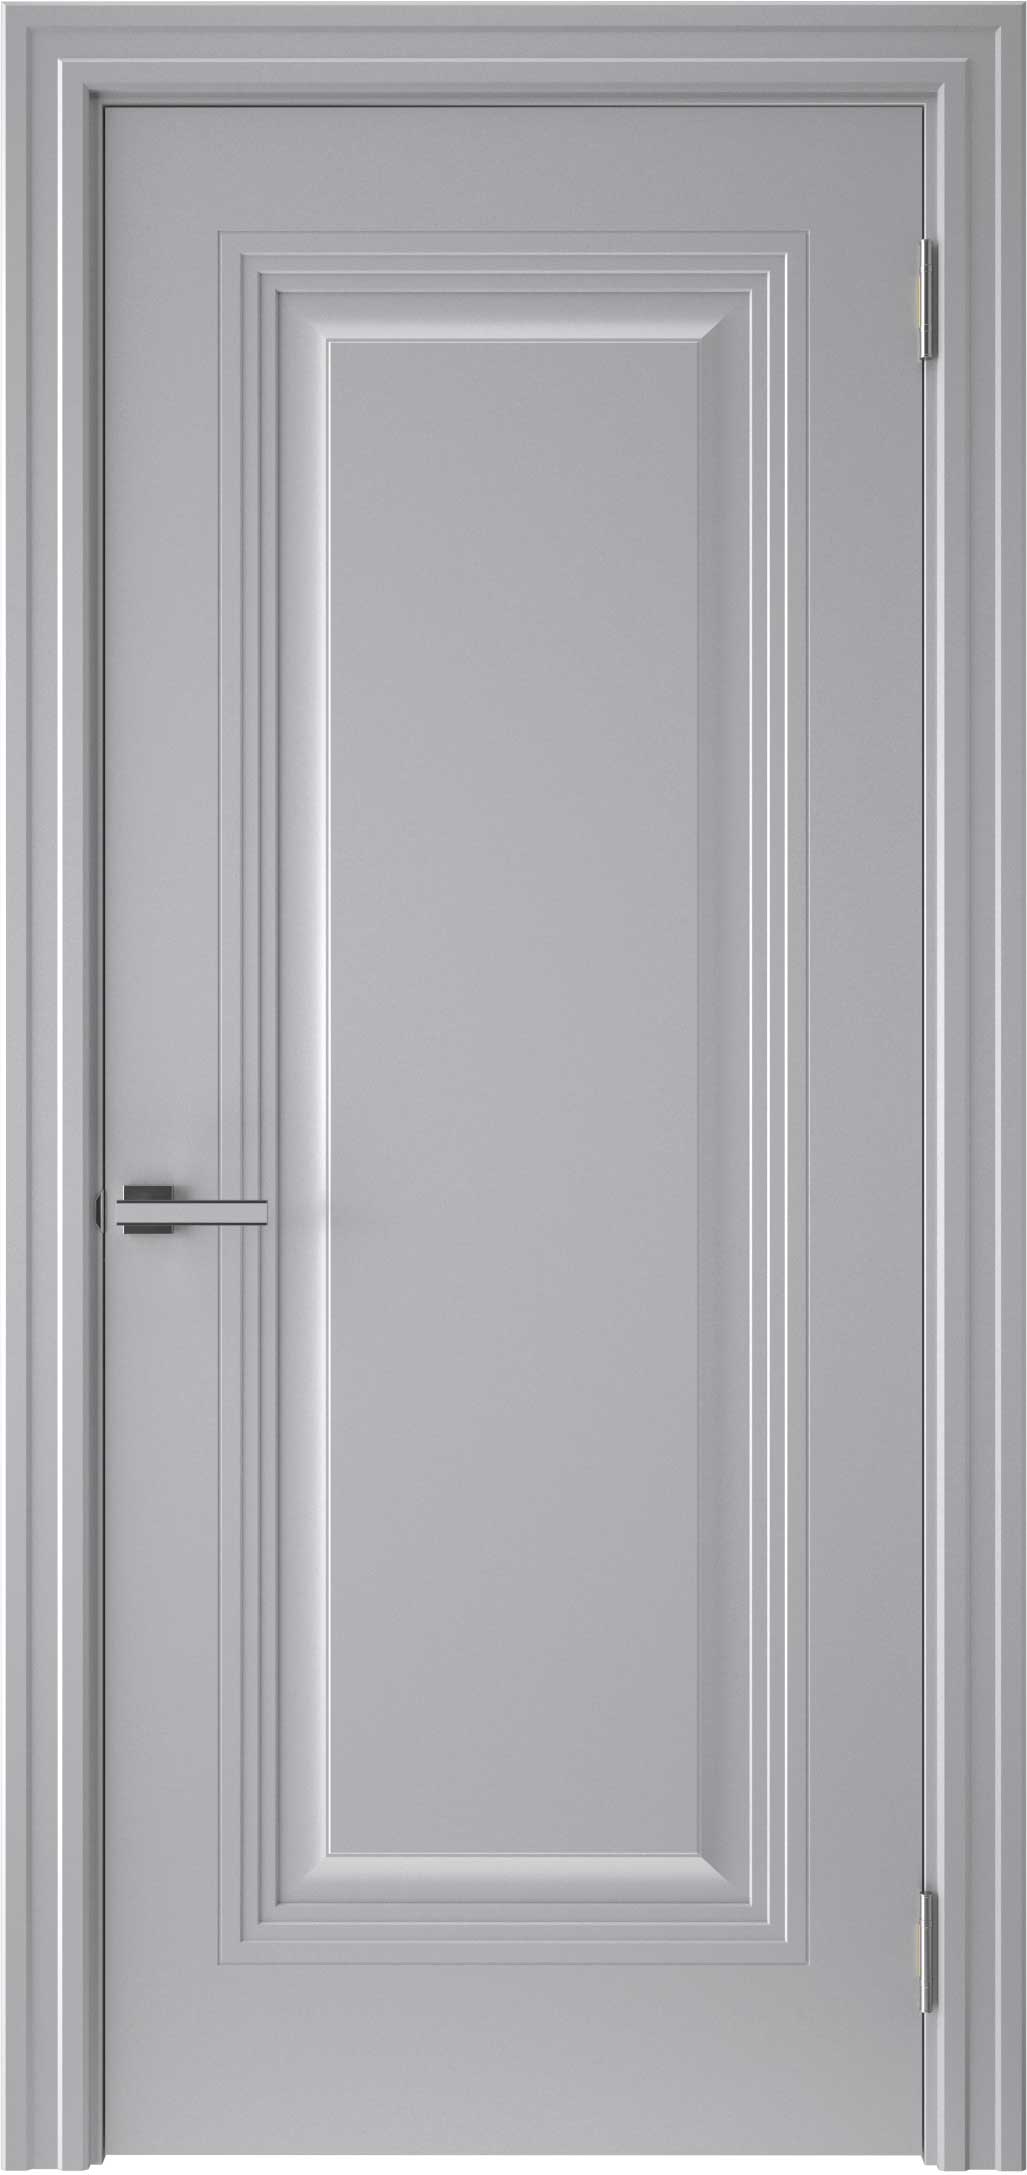 Двери крашеные (Эмаль) ТЕКОНА Смальта-48 глухое Серый ral размер 200 х 60 см. артикул F0000096595